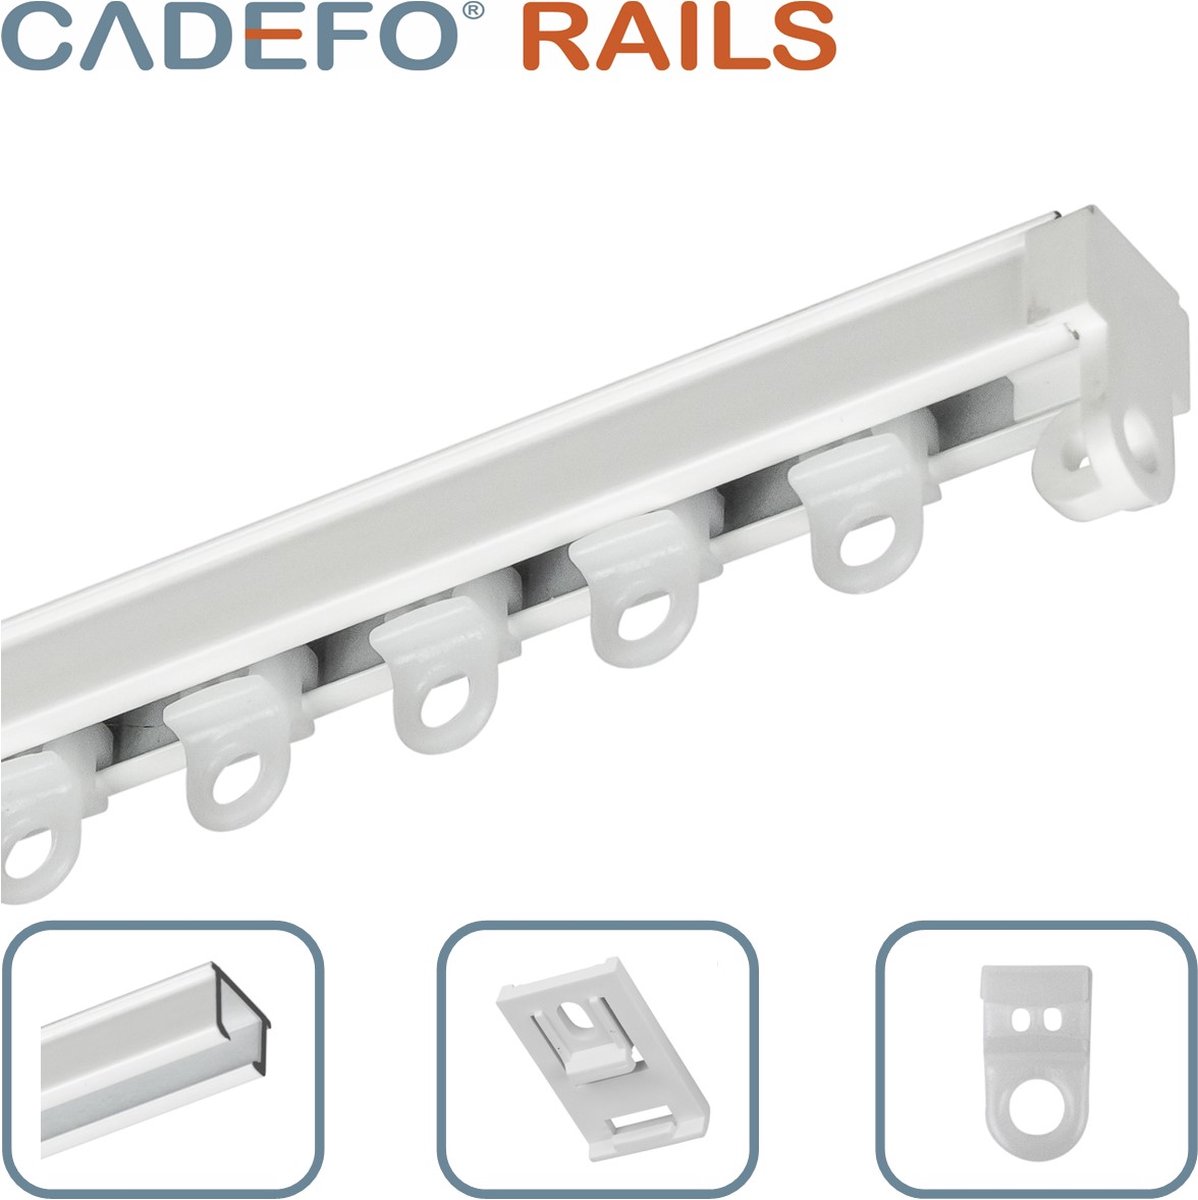 CADEFO RAILS (401 - 450 cm) Gordijnrails - Compleet op maat! - UIT 1 STUK - Leverbaar tot 6 meter - Plafondbevestiging - Lengte 404 cm